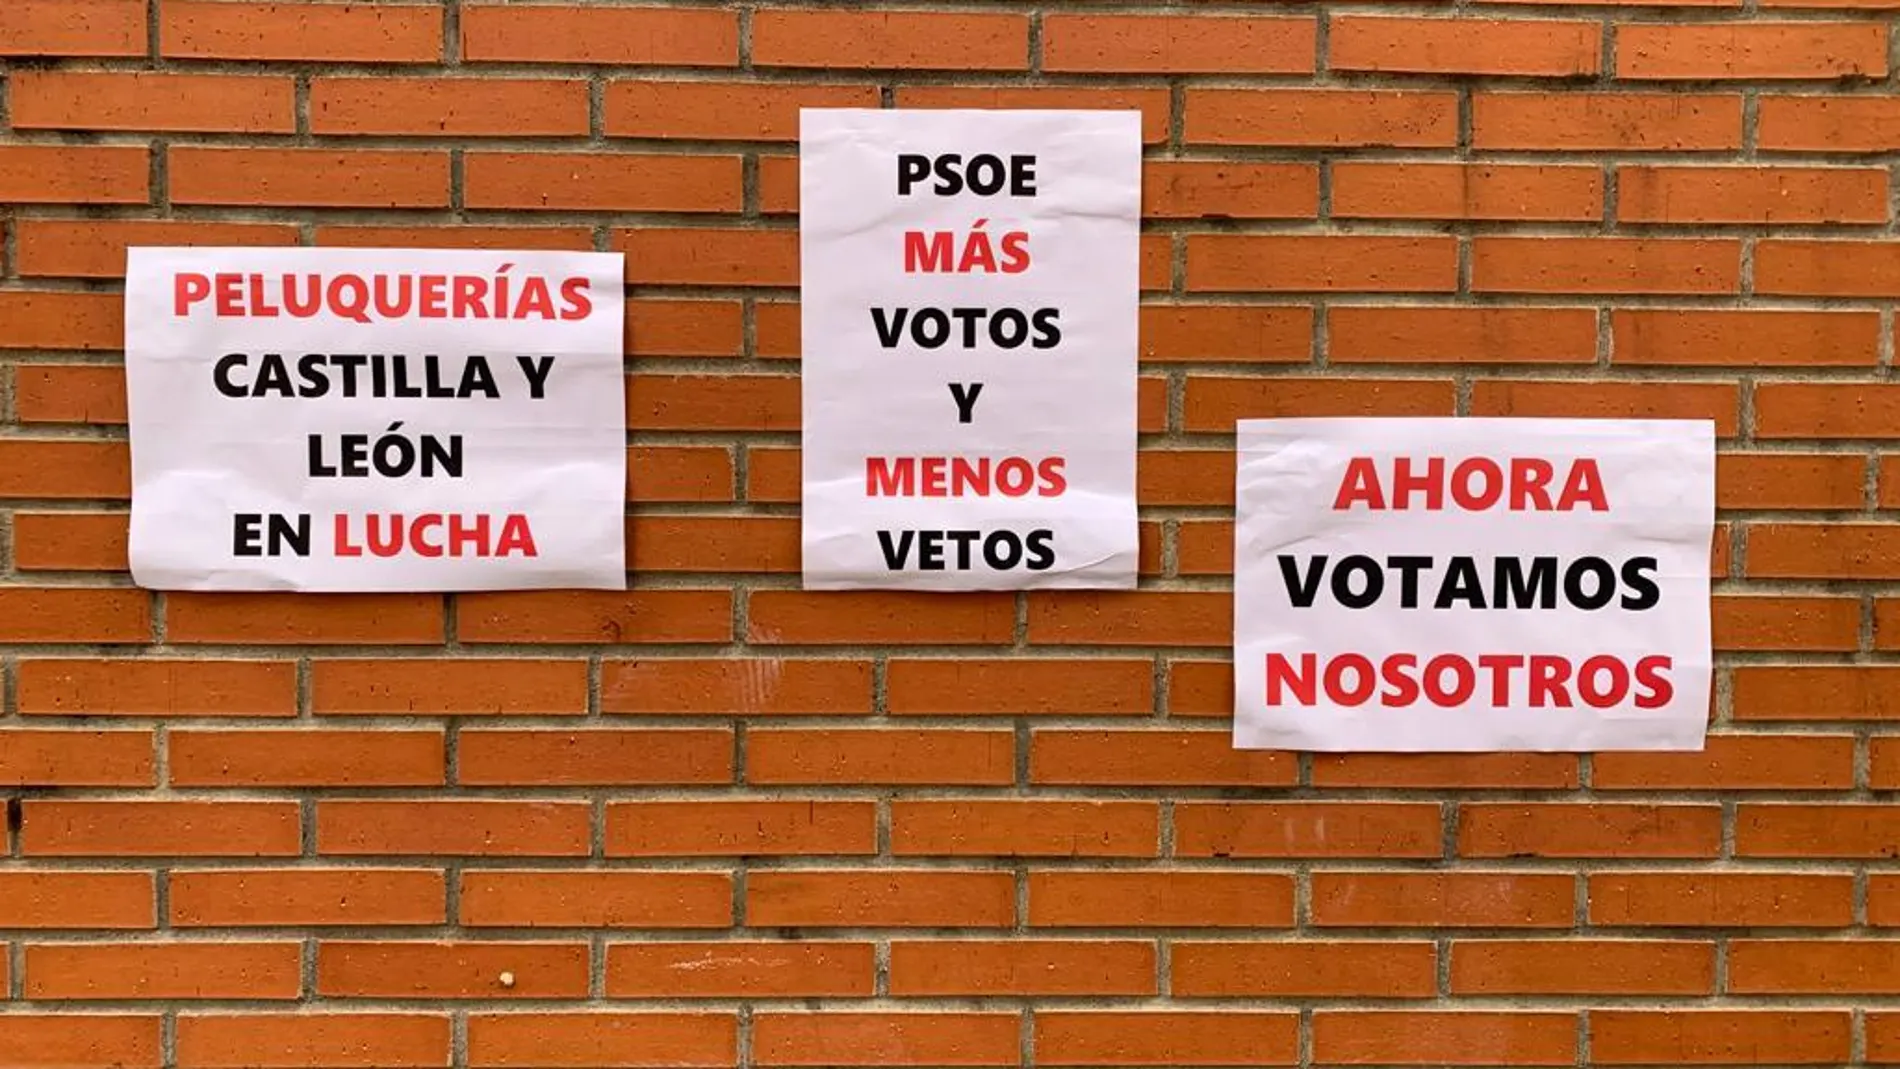 Campaña "PSOE tú nos vetas, ahora votamos nosotros" del sector la peluquería y estética de Castilla y León